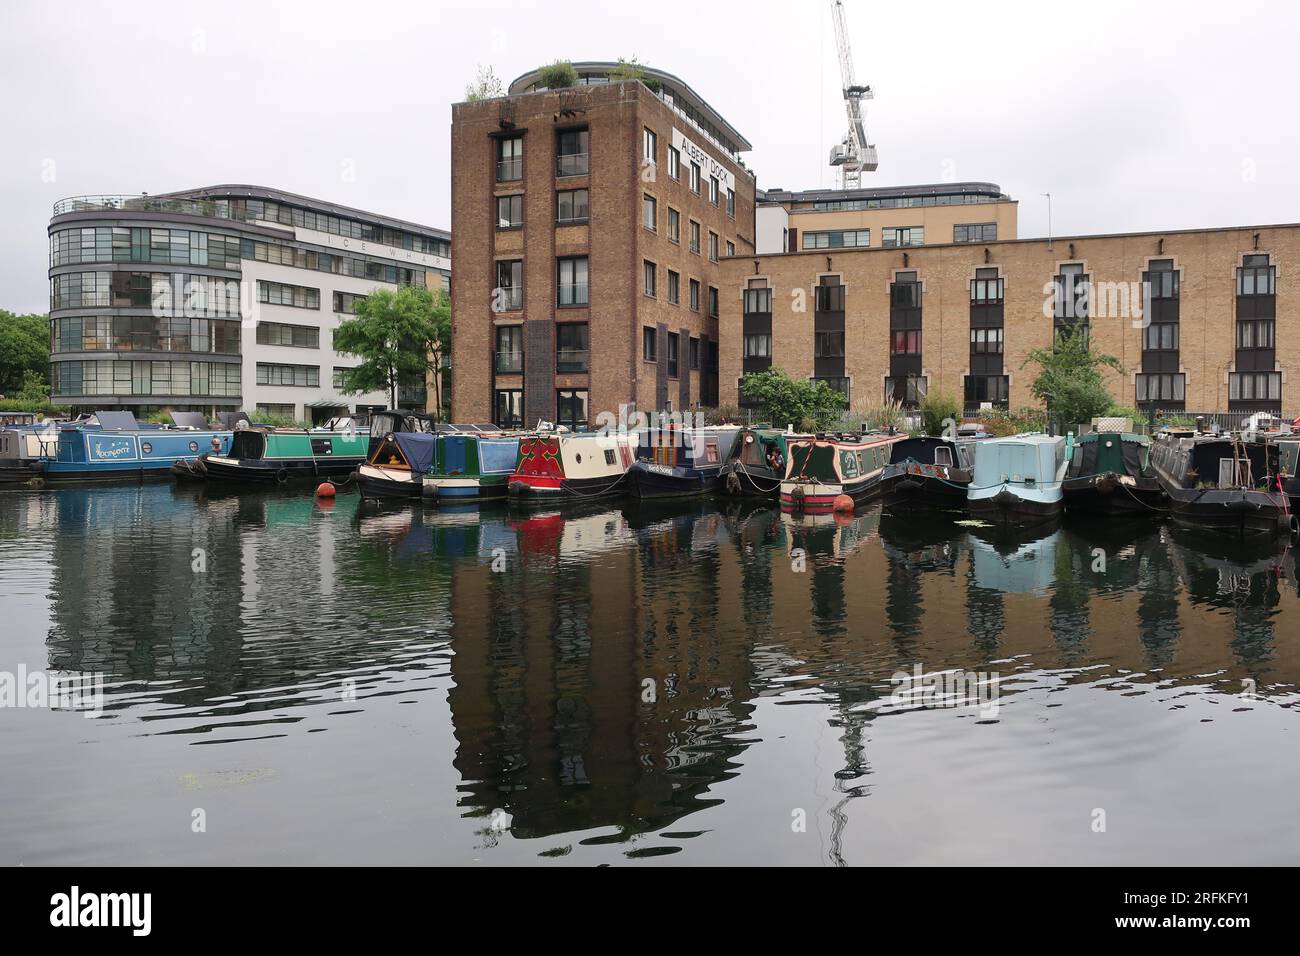 La vie sur l'eau : bateaux étroits amarrés à Battlebridge Basin sur le Regent's Canal à côté des appartements londoniens et de l'ancien Albert Dock. Banque D'Images